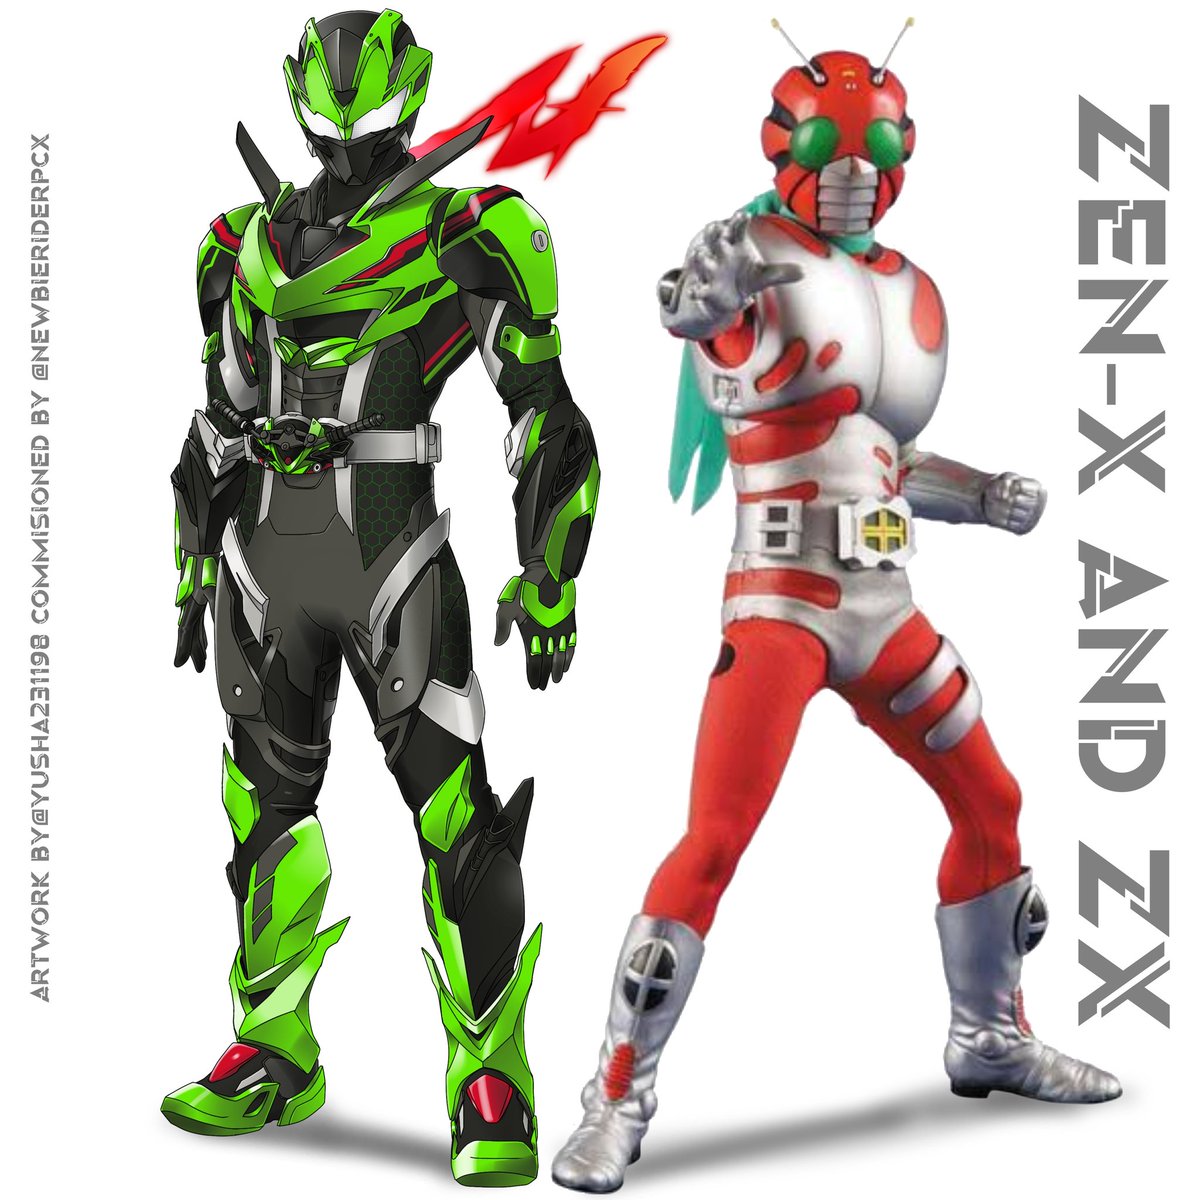 Menyala adalah jalan ninjaku, pilihlah saya, Kamen Rider Zen-X ! 🥷🏻🔥 MOTO X RIDER, Insipired by ZX25R #kamenrider #kamenriderfanart #kamenriderconcept #kamenriderconceptart #reiwarider #kamenridergeats #kamenridergotchard #tokusatsu #tokufans #tokusatsuindonesia #ZX25R